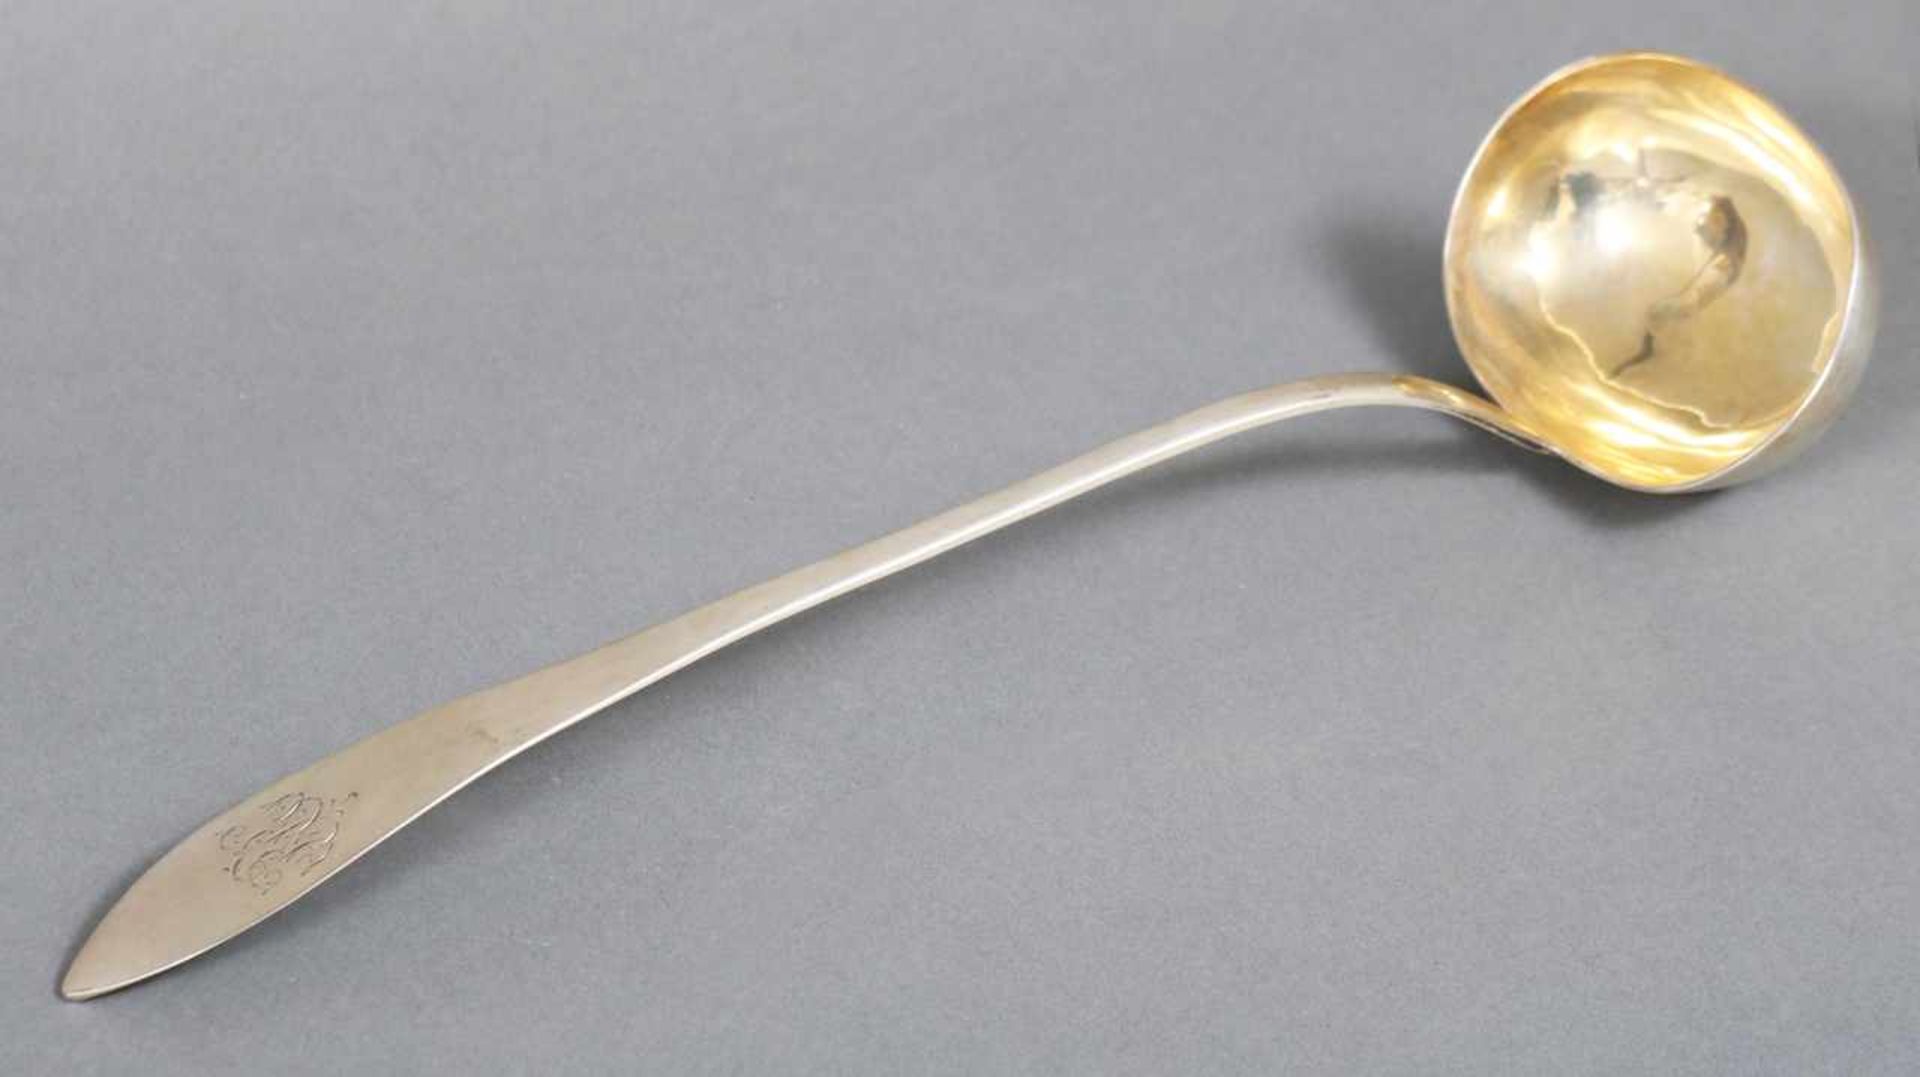 Kelle 13 Lot Silber, Empire-Form, dat. 1809, innen vergoldet, spitz zulaufender Griff mit